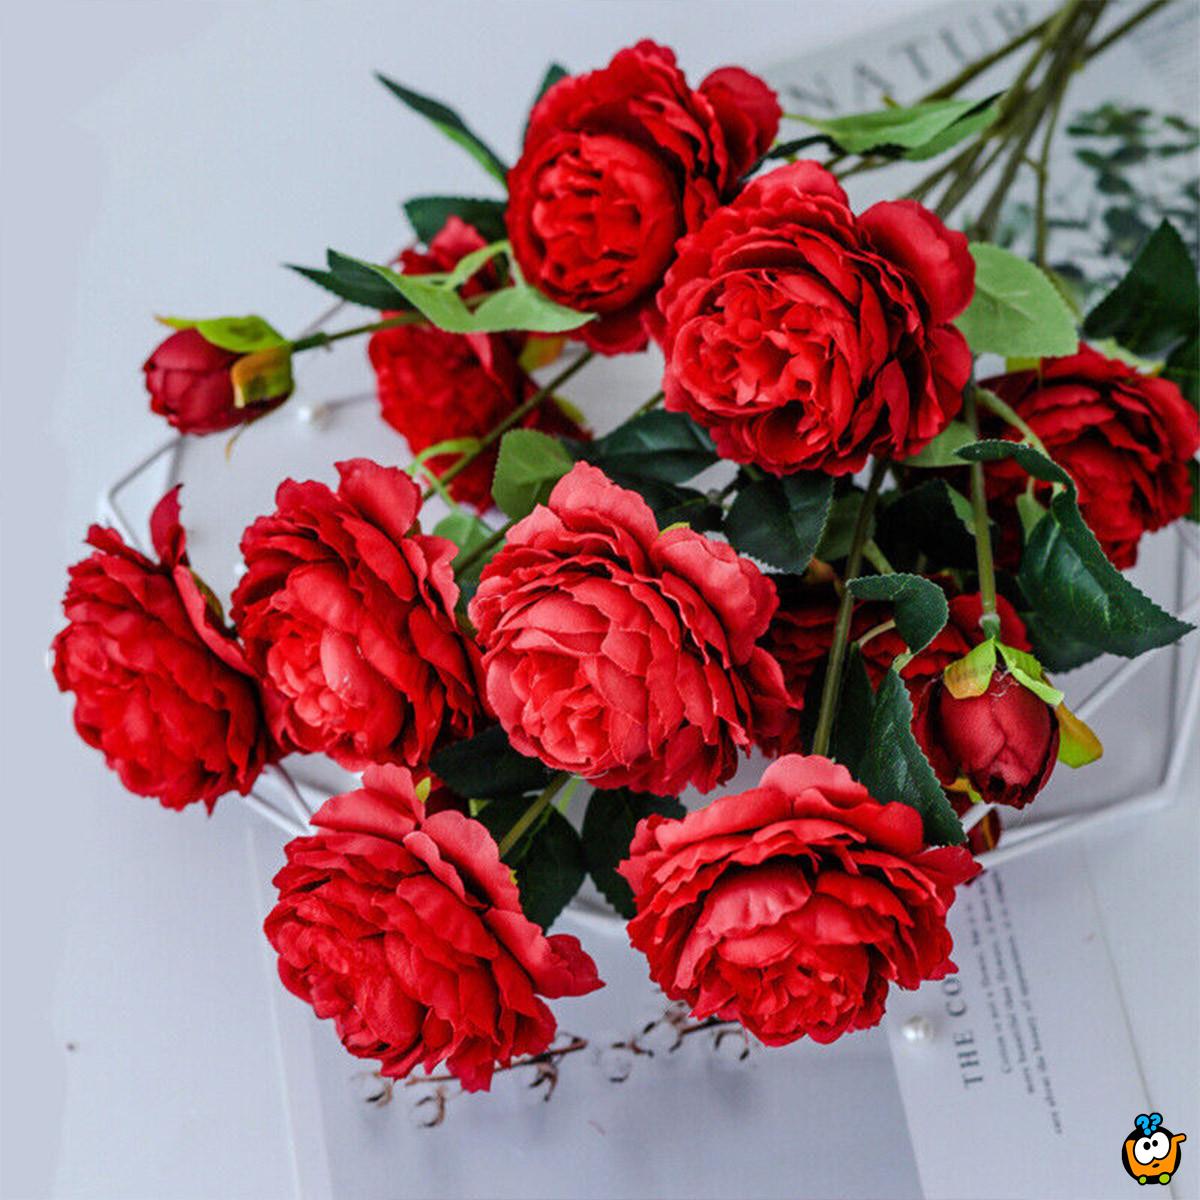 Rose branch - Grančica ruže sa tri cveta